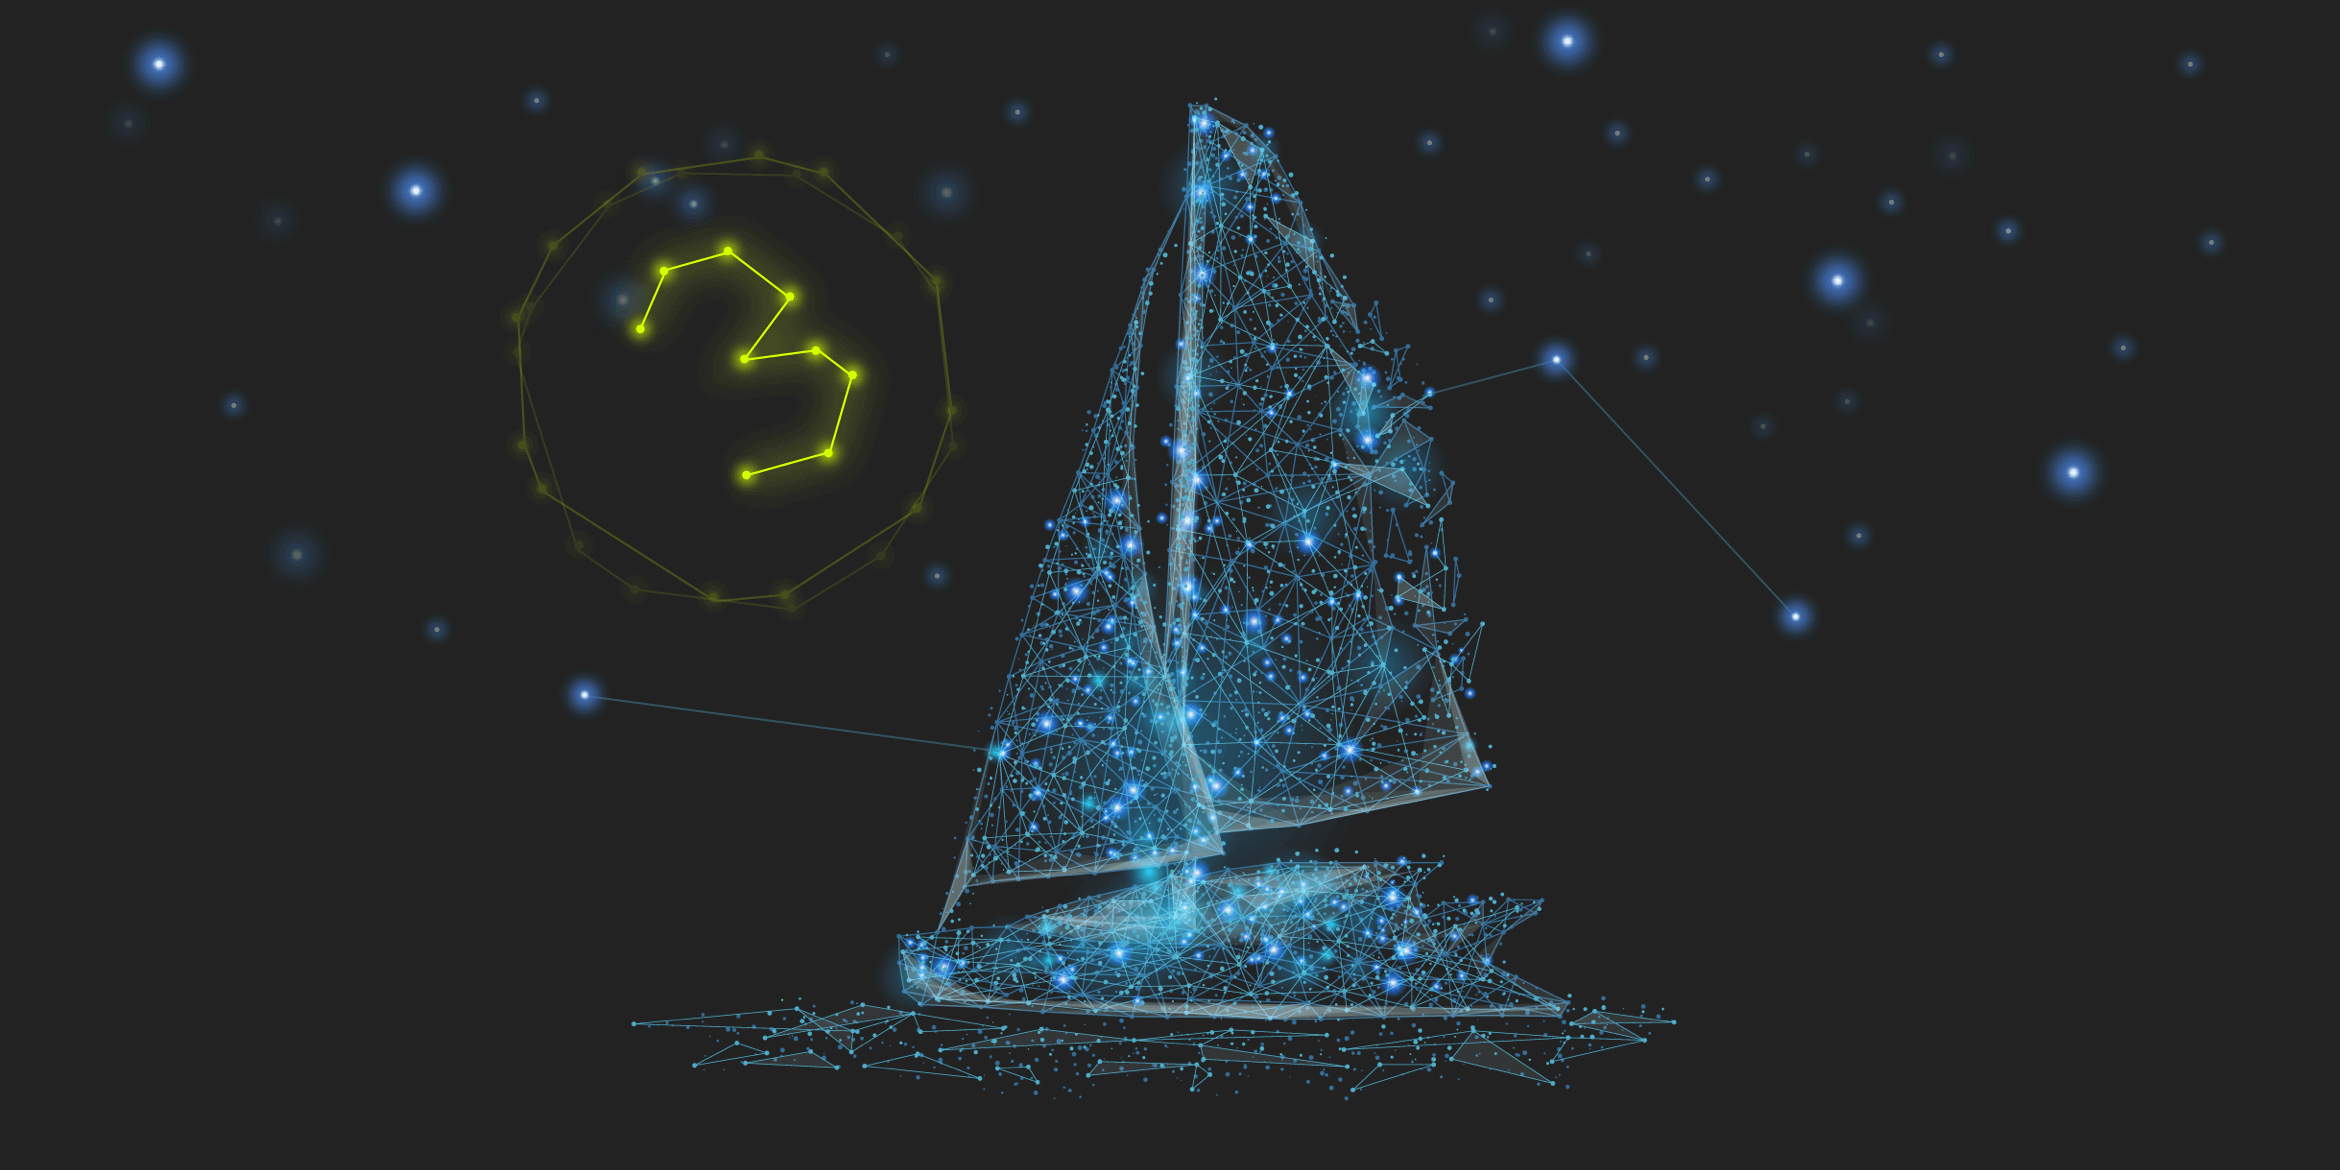 In form eines Sternenbildes mit blauen Sternen dargestelltes Schiff vor einem schwarzen Hintergrund. Links daneben leuchtet eine gelbe 3